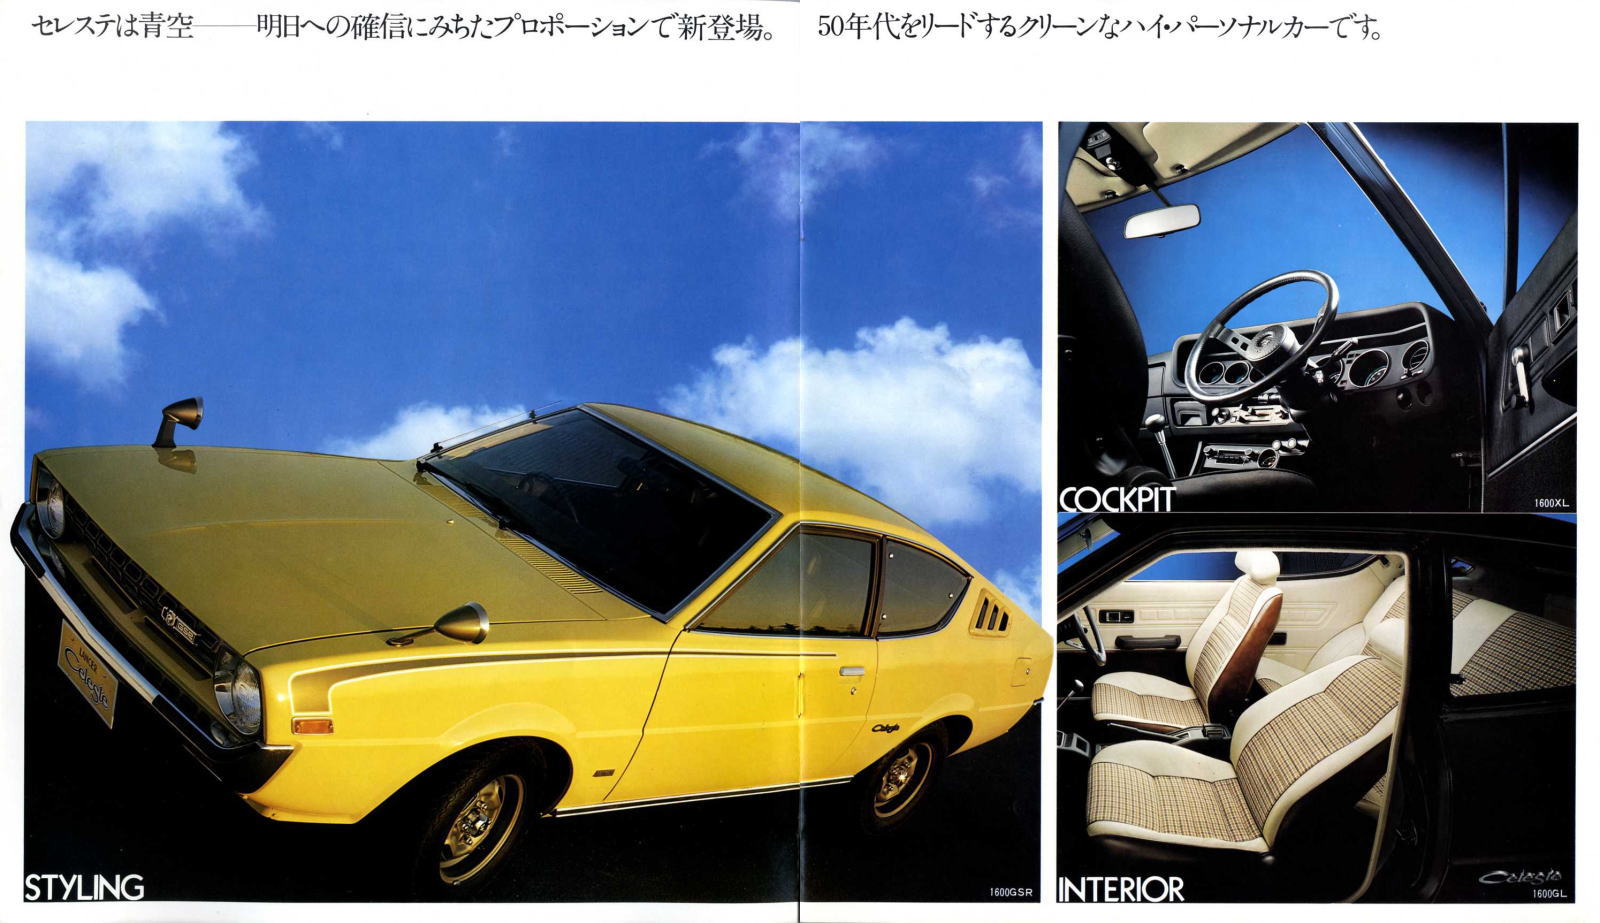 旧車カタログコレクション 旧車・三菱・ランサーセレステ(A72/73/77型)